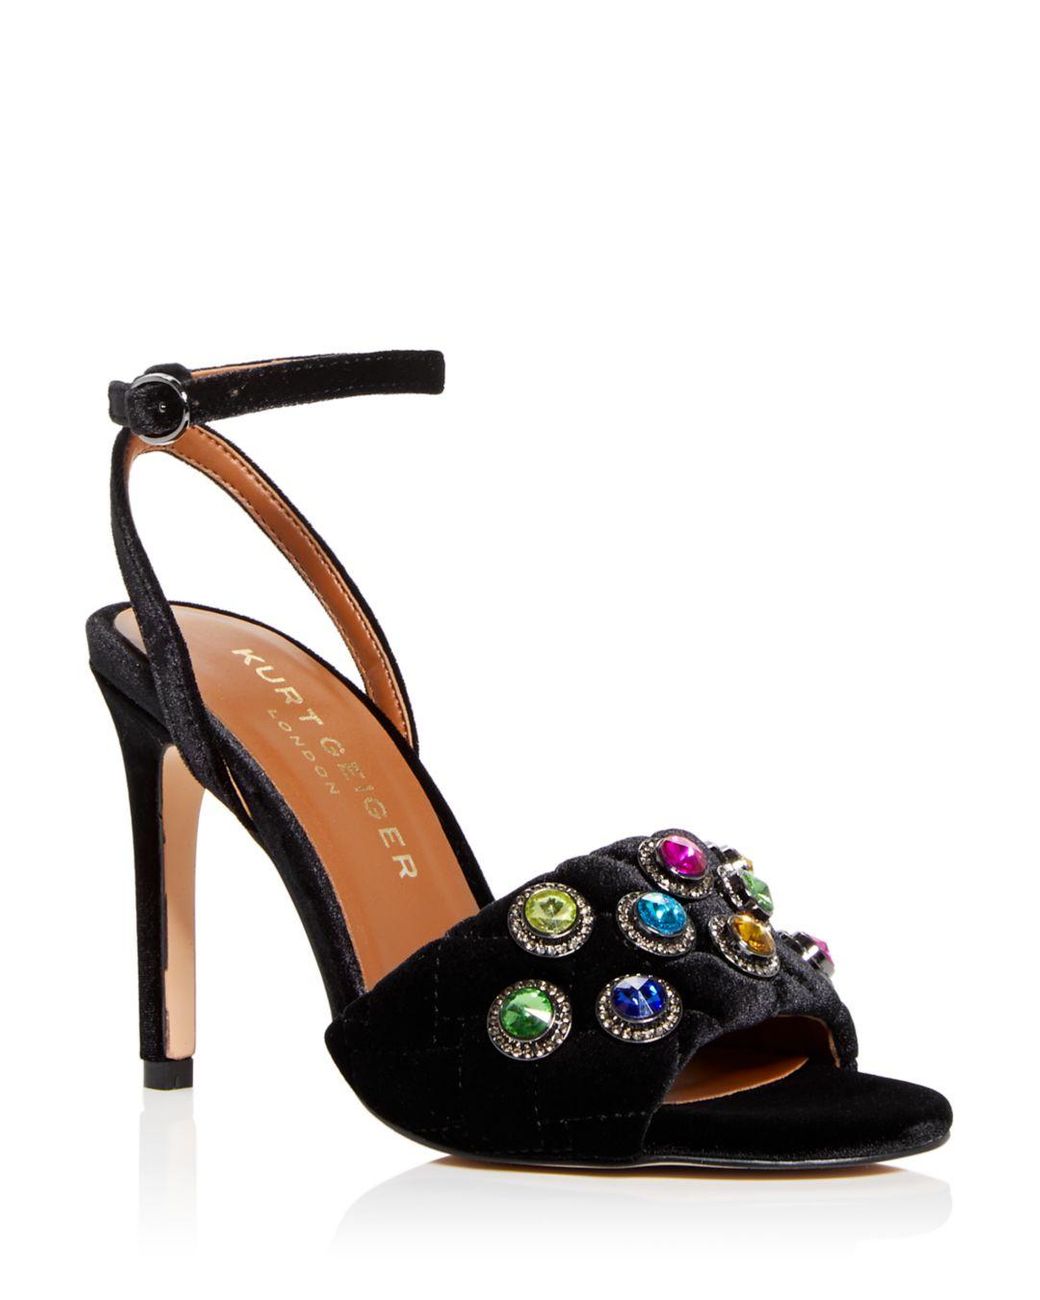 Kurt Geiger Octavia Embellished High Heel Sandals in Black | Lyst